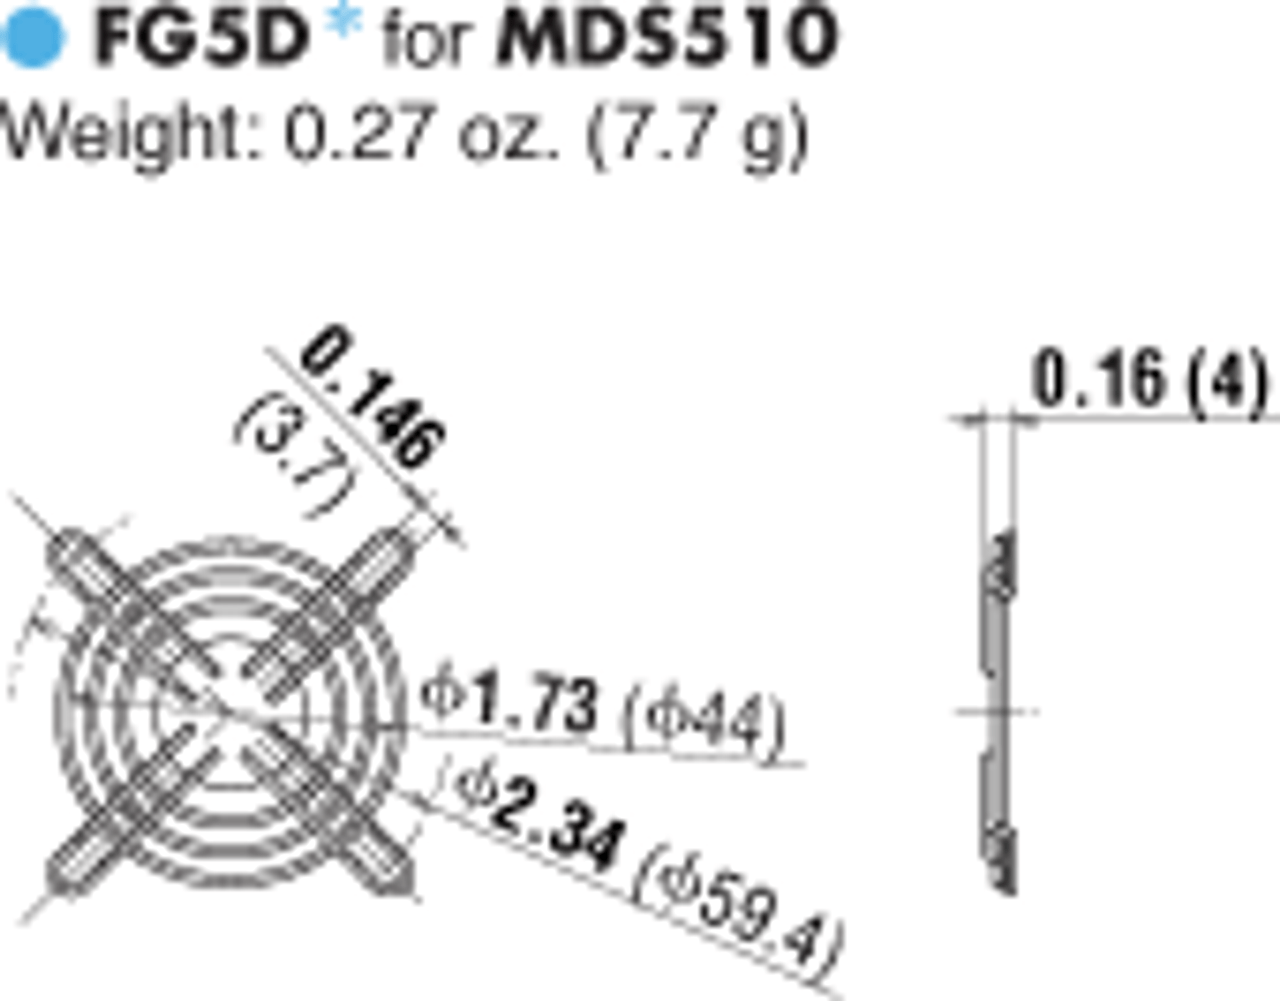 T-MDS510-24L-G - Dimensions